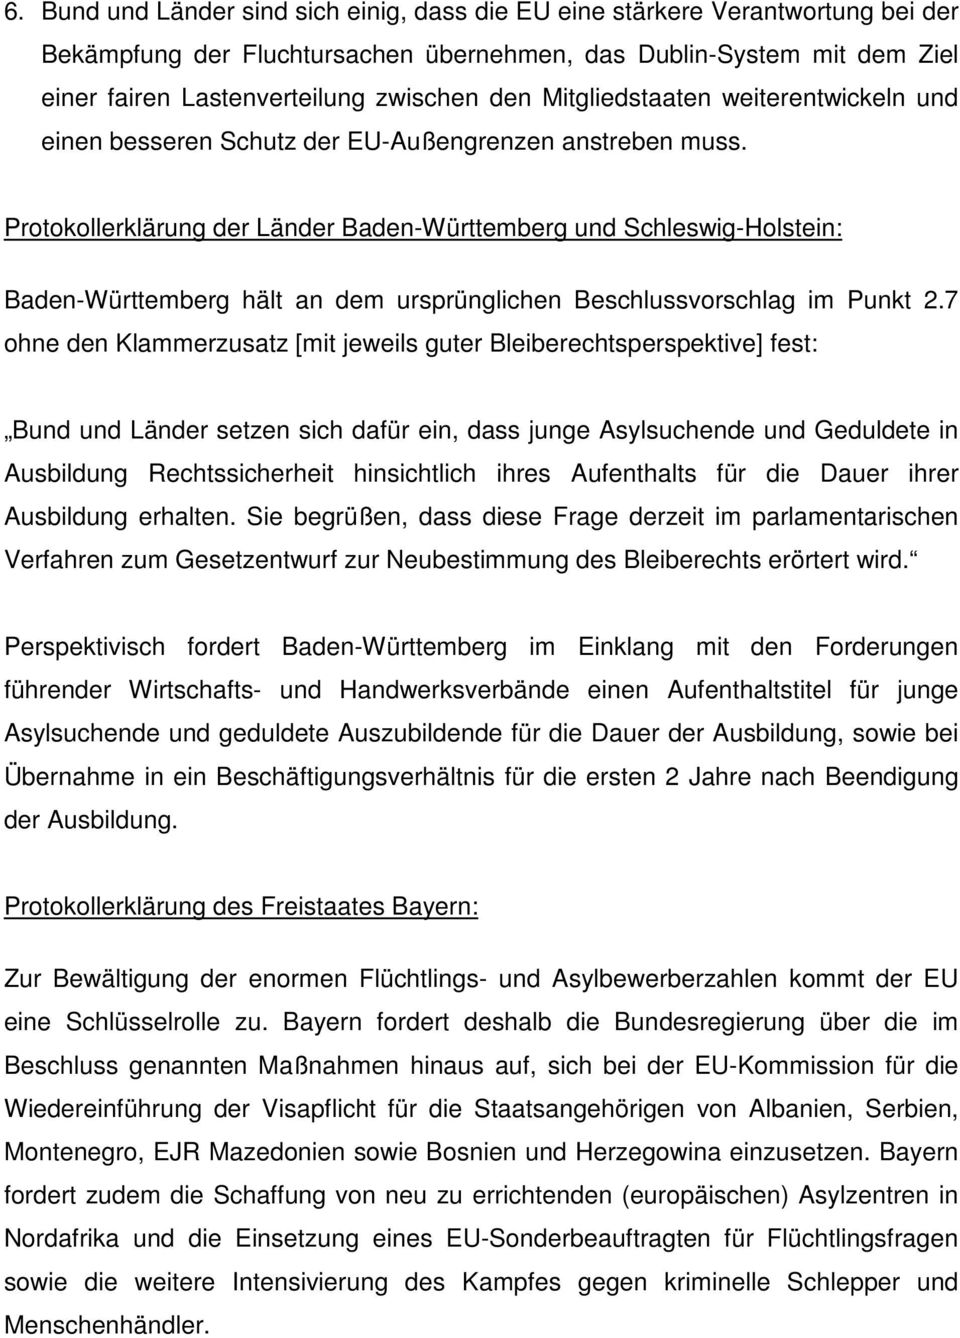 Protokollerklärung der Länder Baden-Württemberg und Schleswig-Holstein: Baden-Württemberg hält an dem ursprünglichen Beschlussvorschlag im Punkt 2.